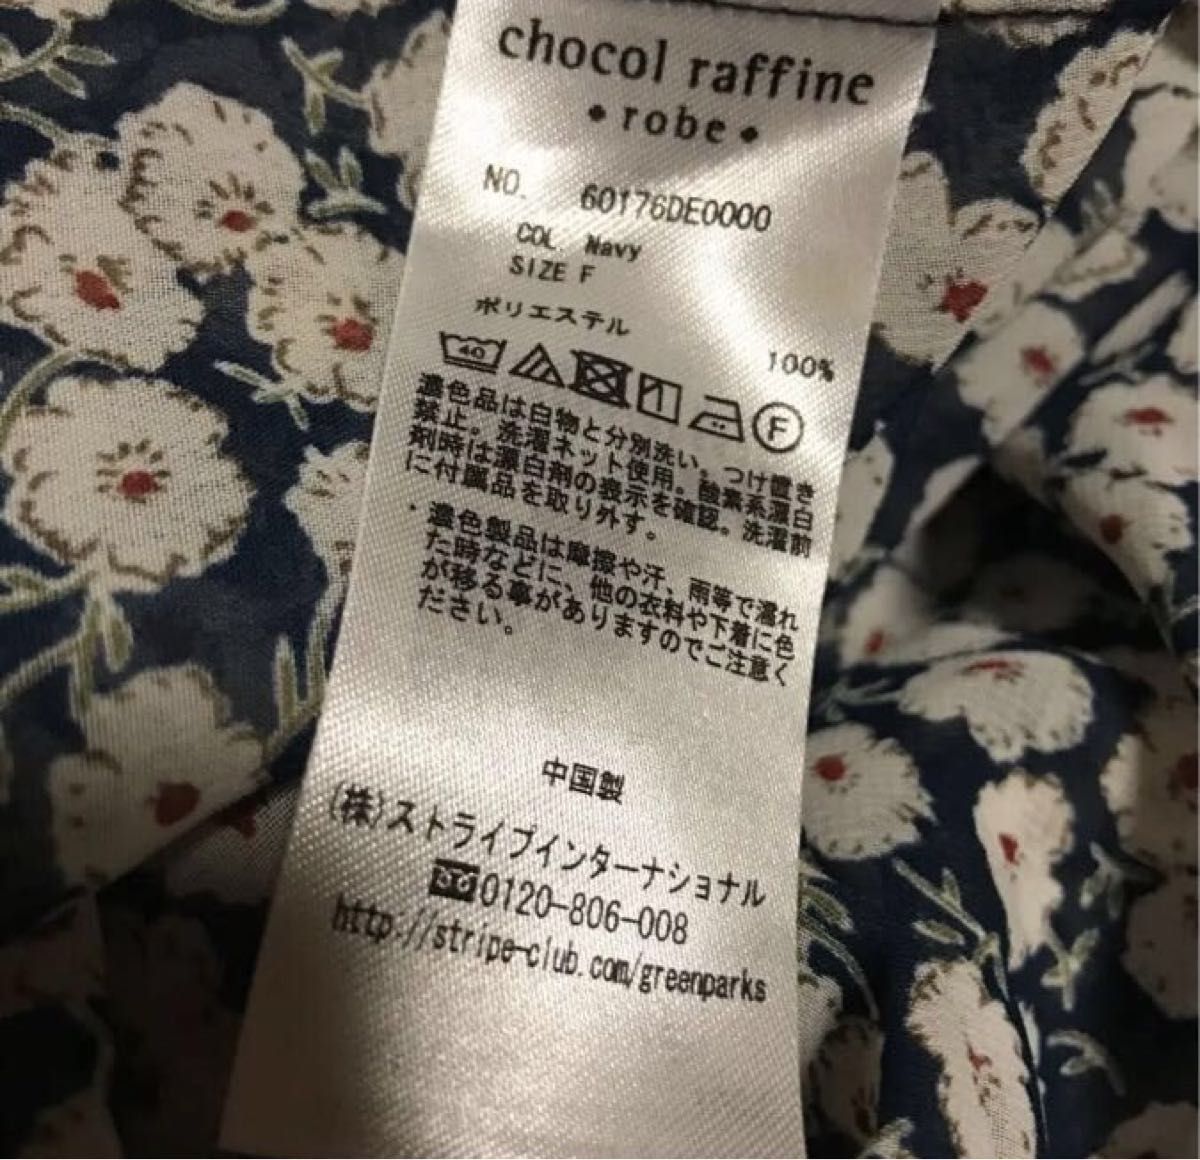 PayPayフリマ｜chocol raffine robe ショコラフィネローブ 花柄ロングカーディガン